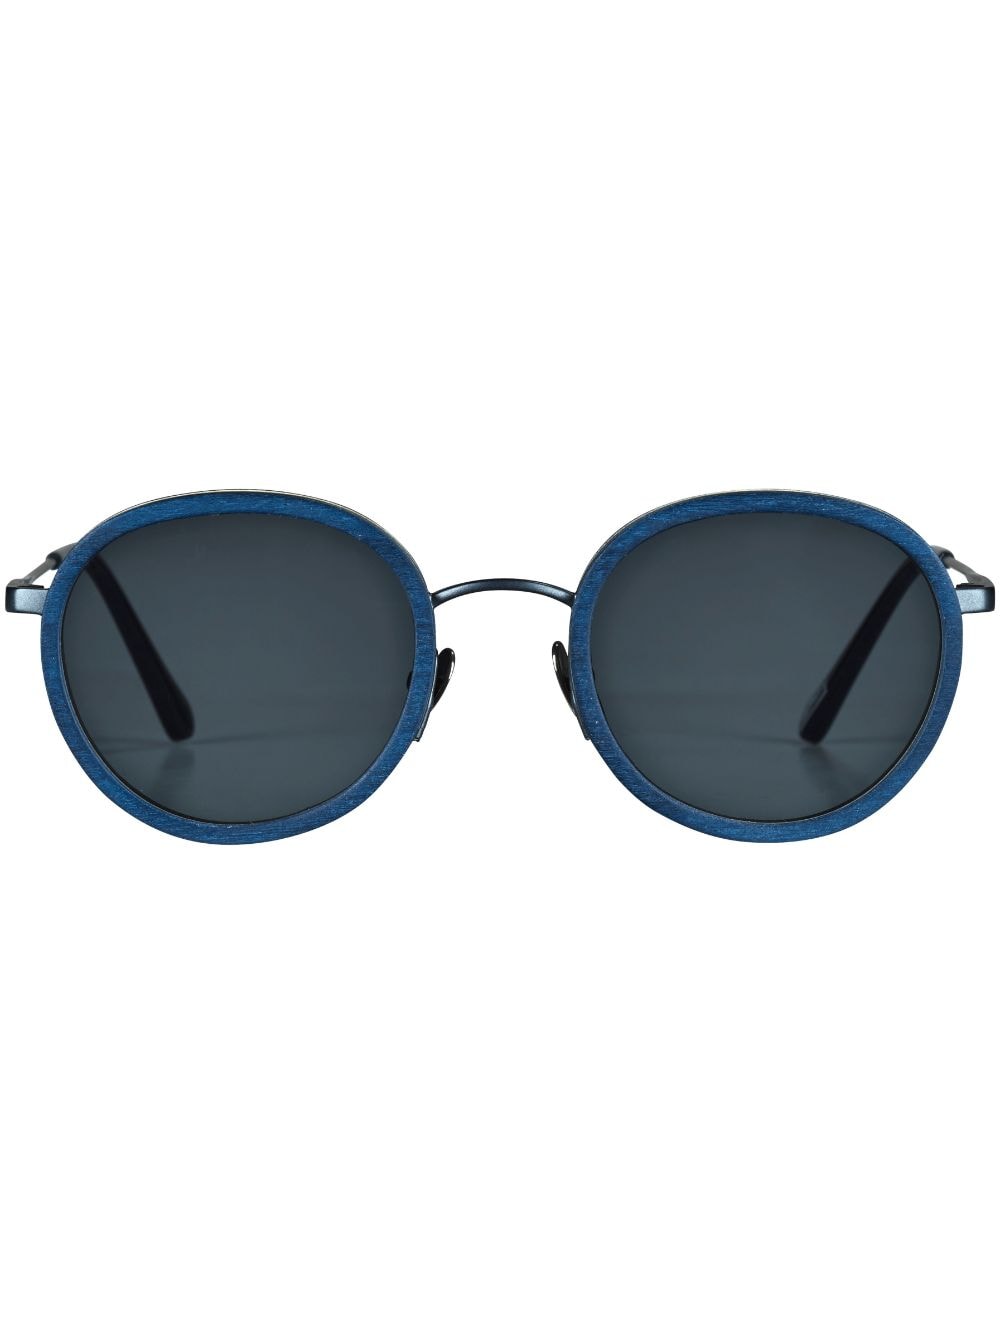 Vilebrequin x Shelter Victoire round-frame sunglasses - Blue von Vilebrequin